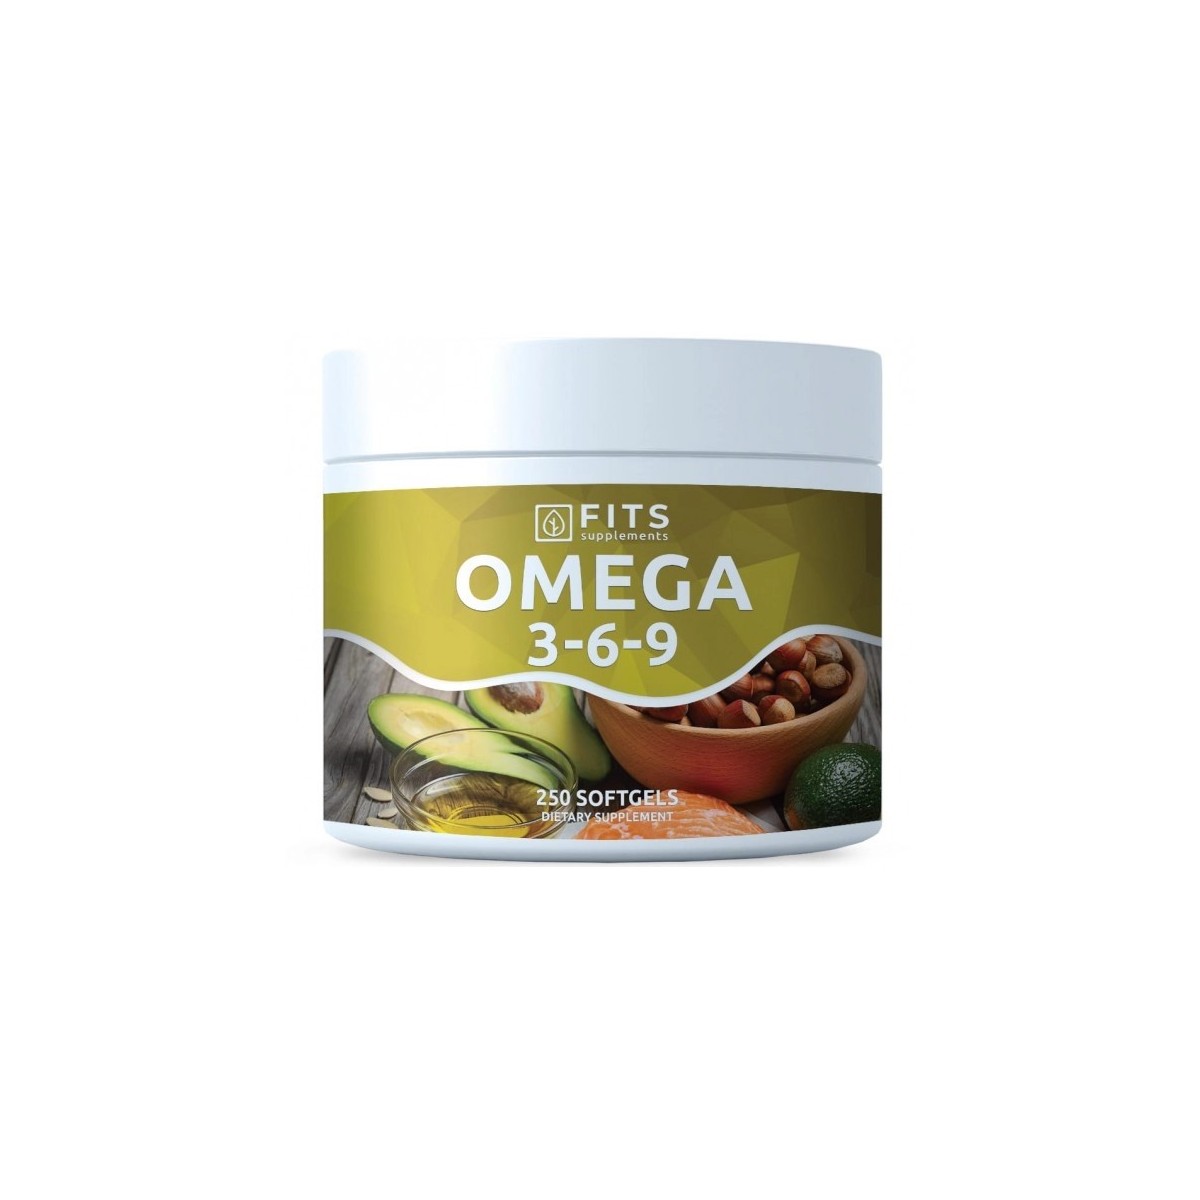 Nutricosmética - Suplementos al mejor precio: Omega 3-6-9 1000mg 250 cápsulas blandas de FITS Supplements en Skin Thinks - 